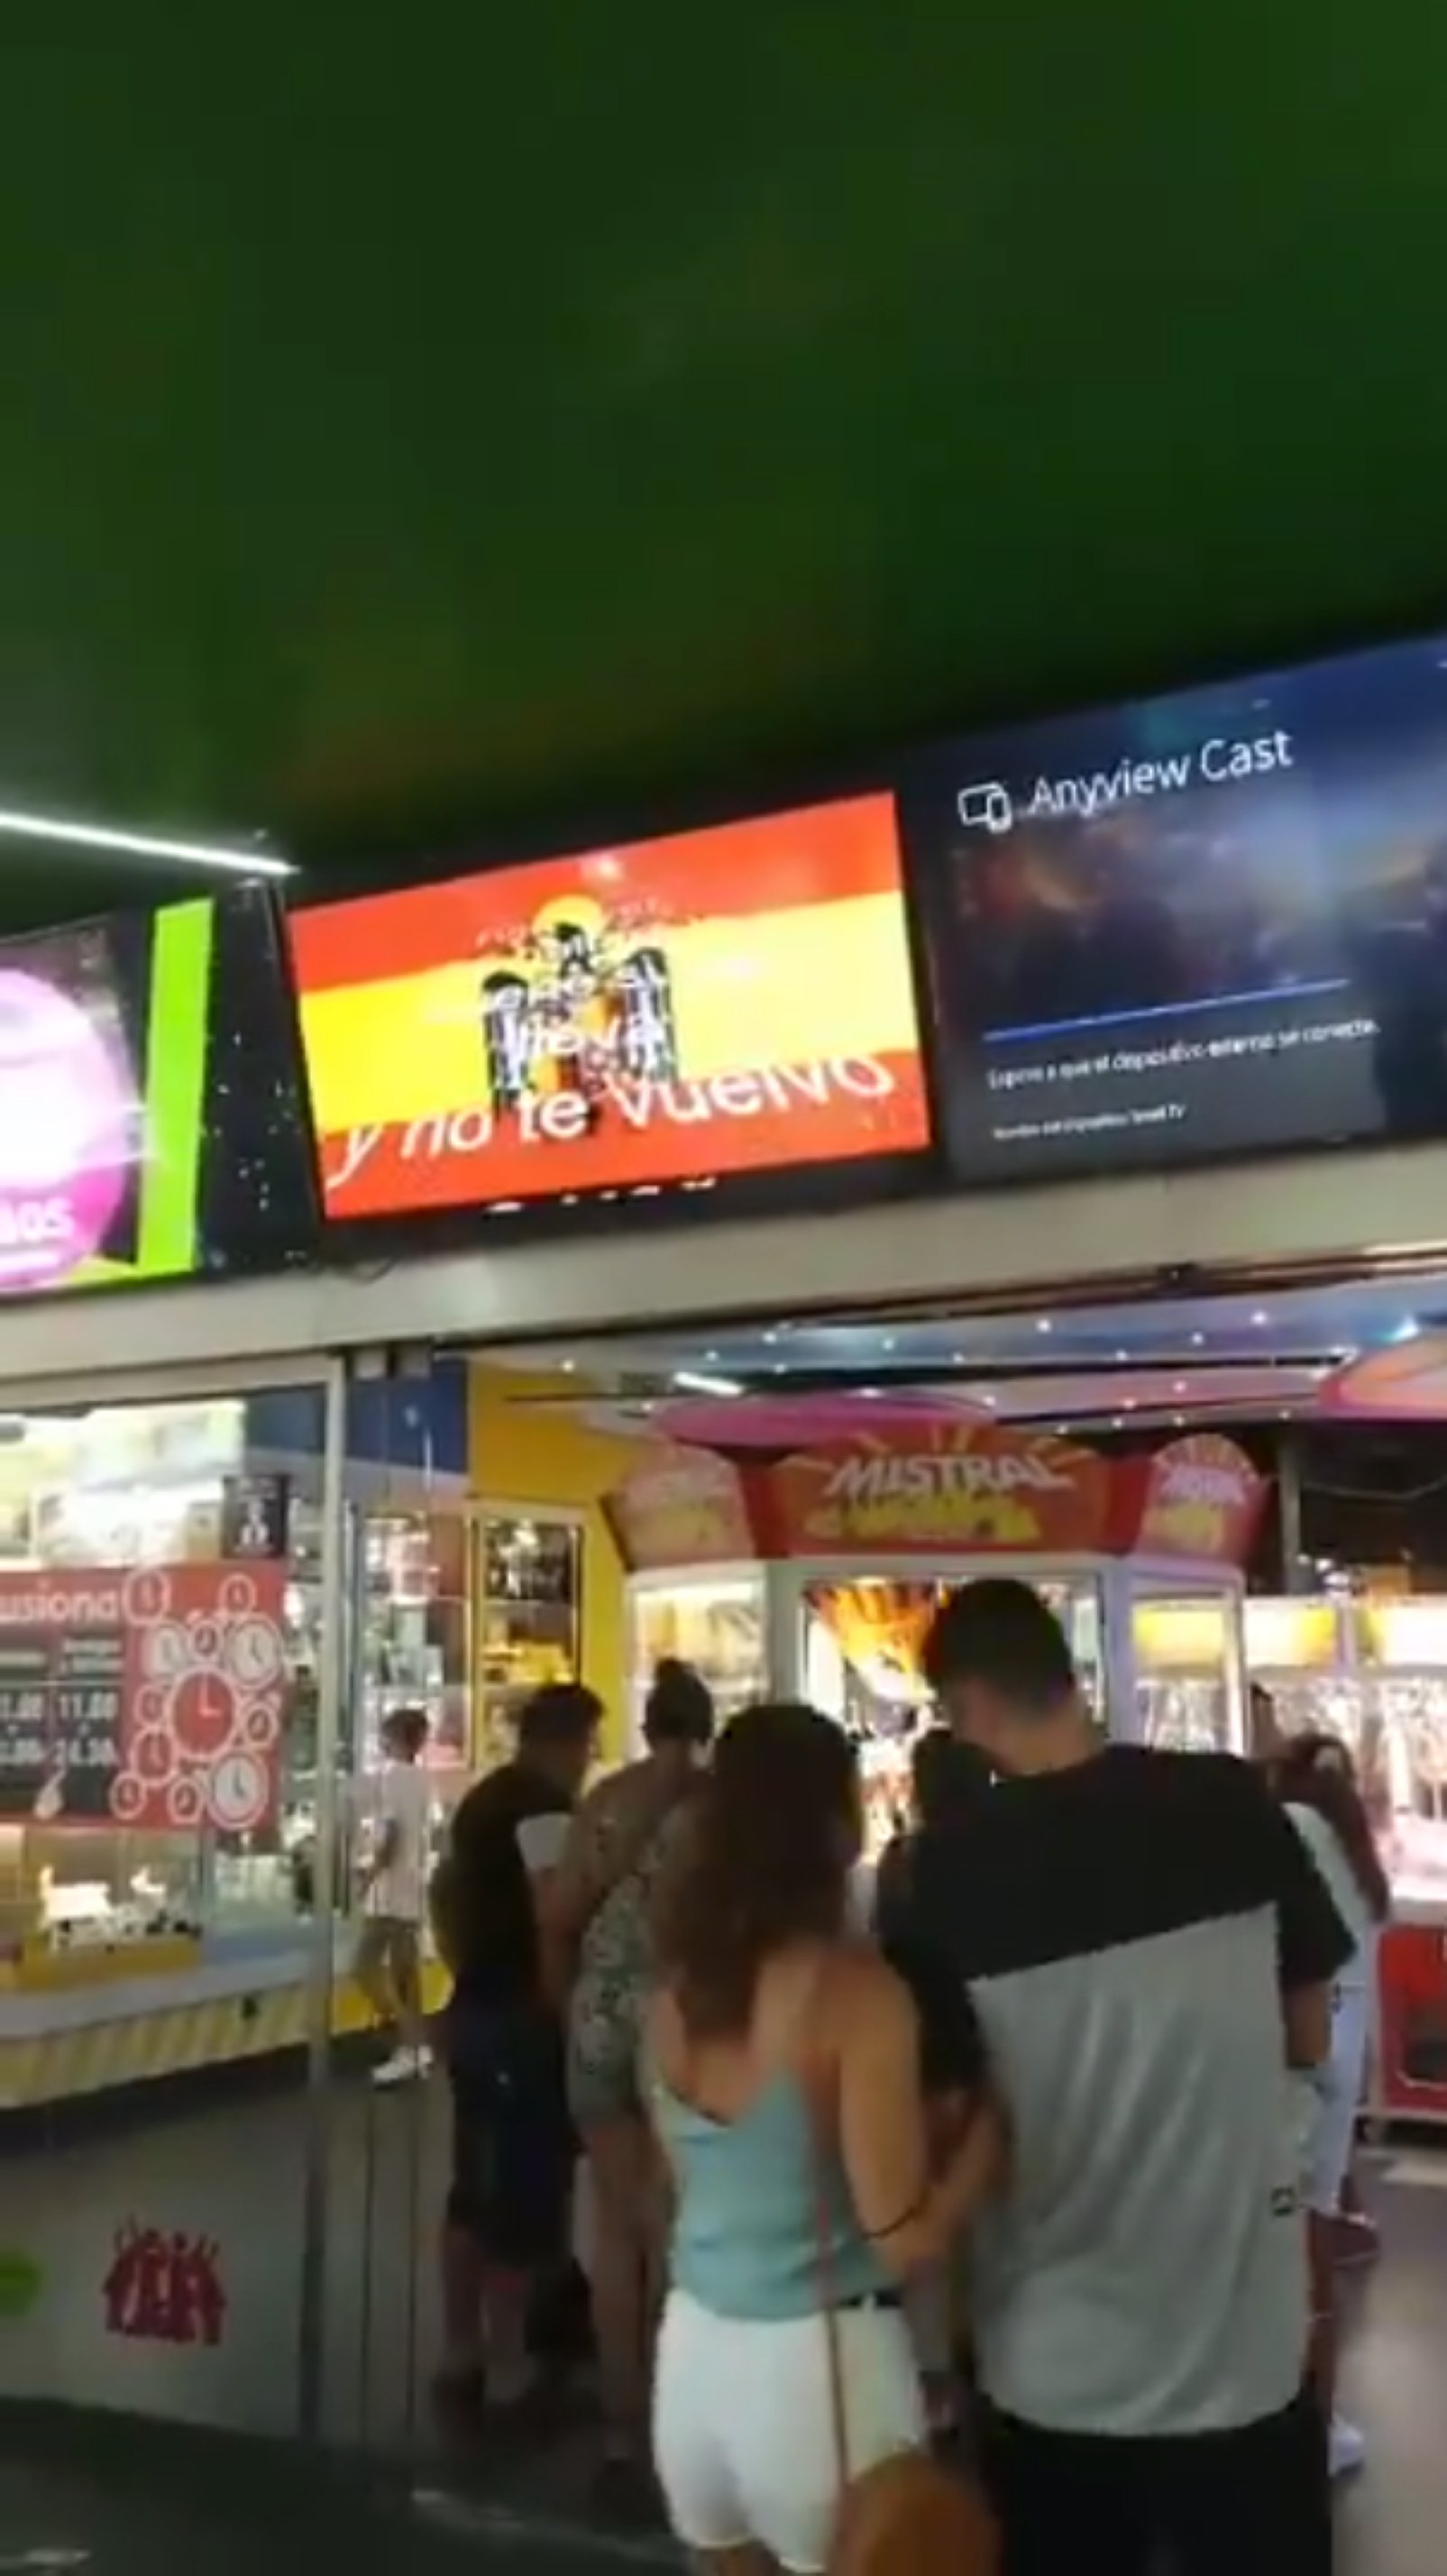 Sabotaje: Cine X y falangismo en las pantallas de un centro comercial de Cornellà